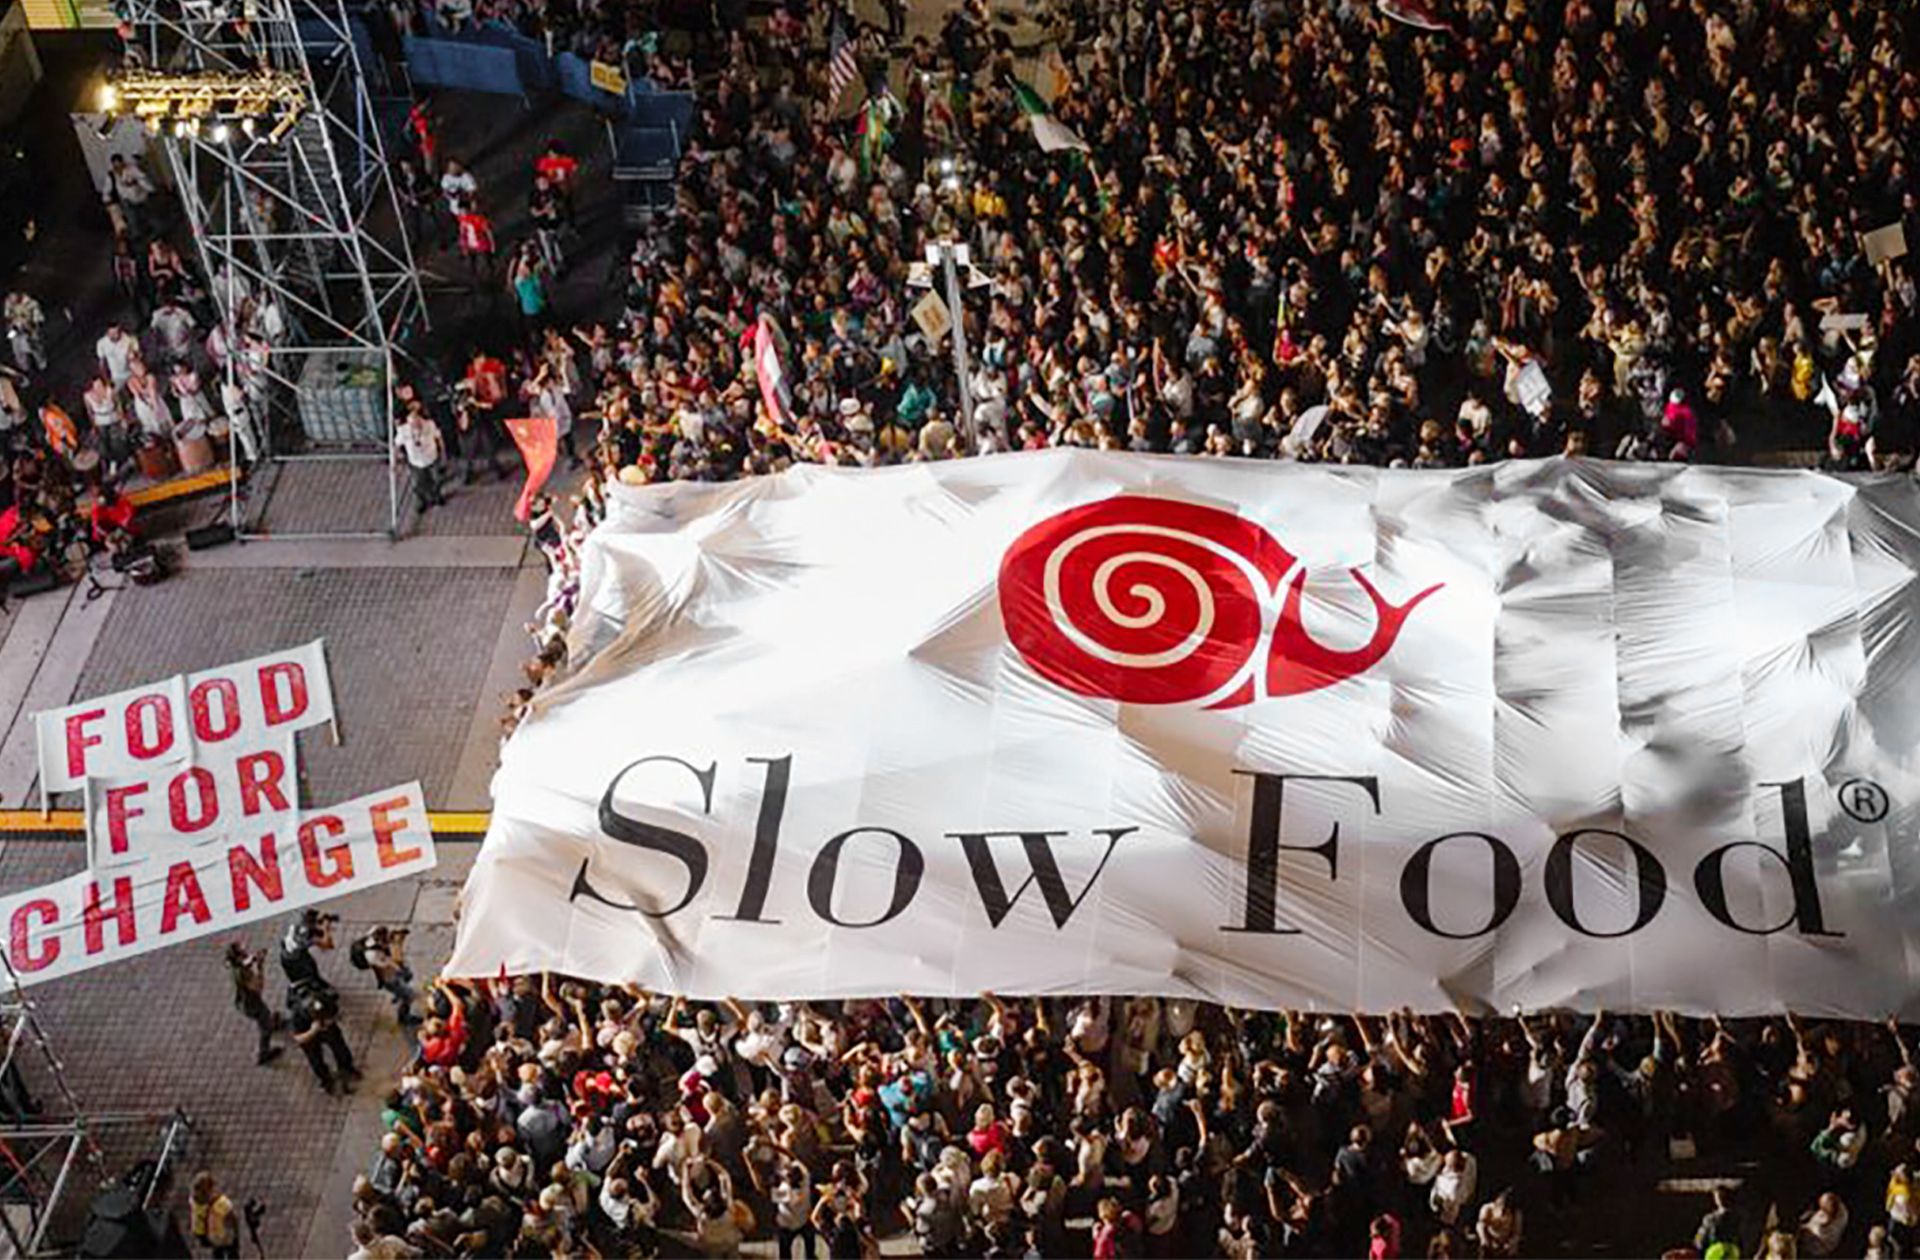 Büyük bir Slow Food pankartı taşıyan kalabalık bir grup, bir sahnenin önünde duruyor.